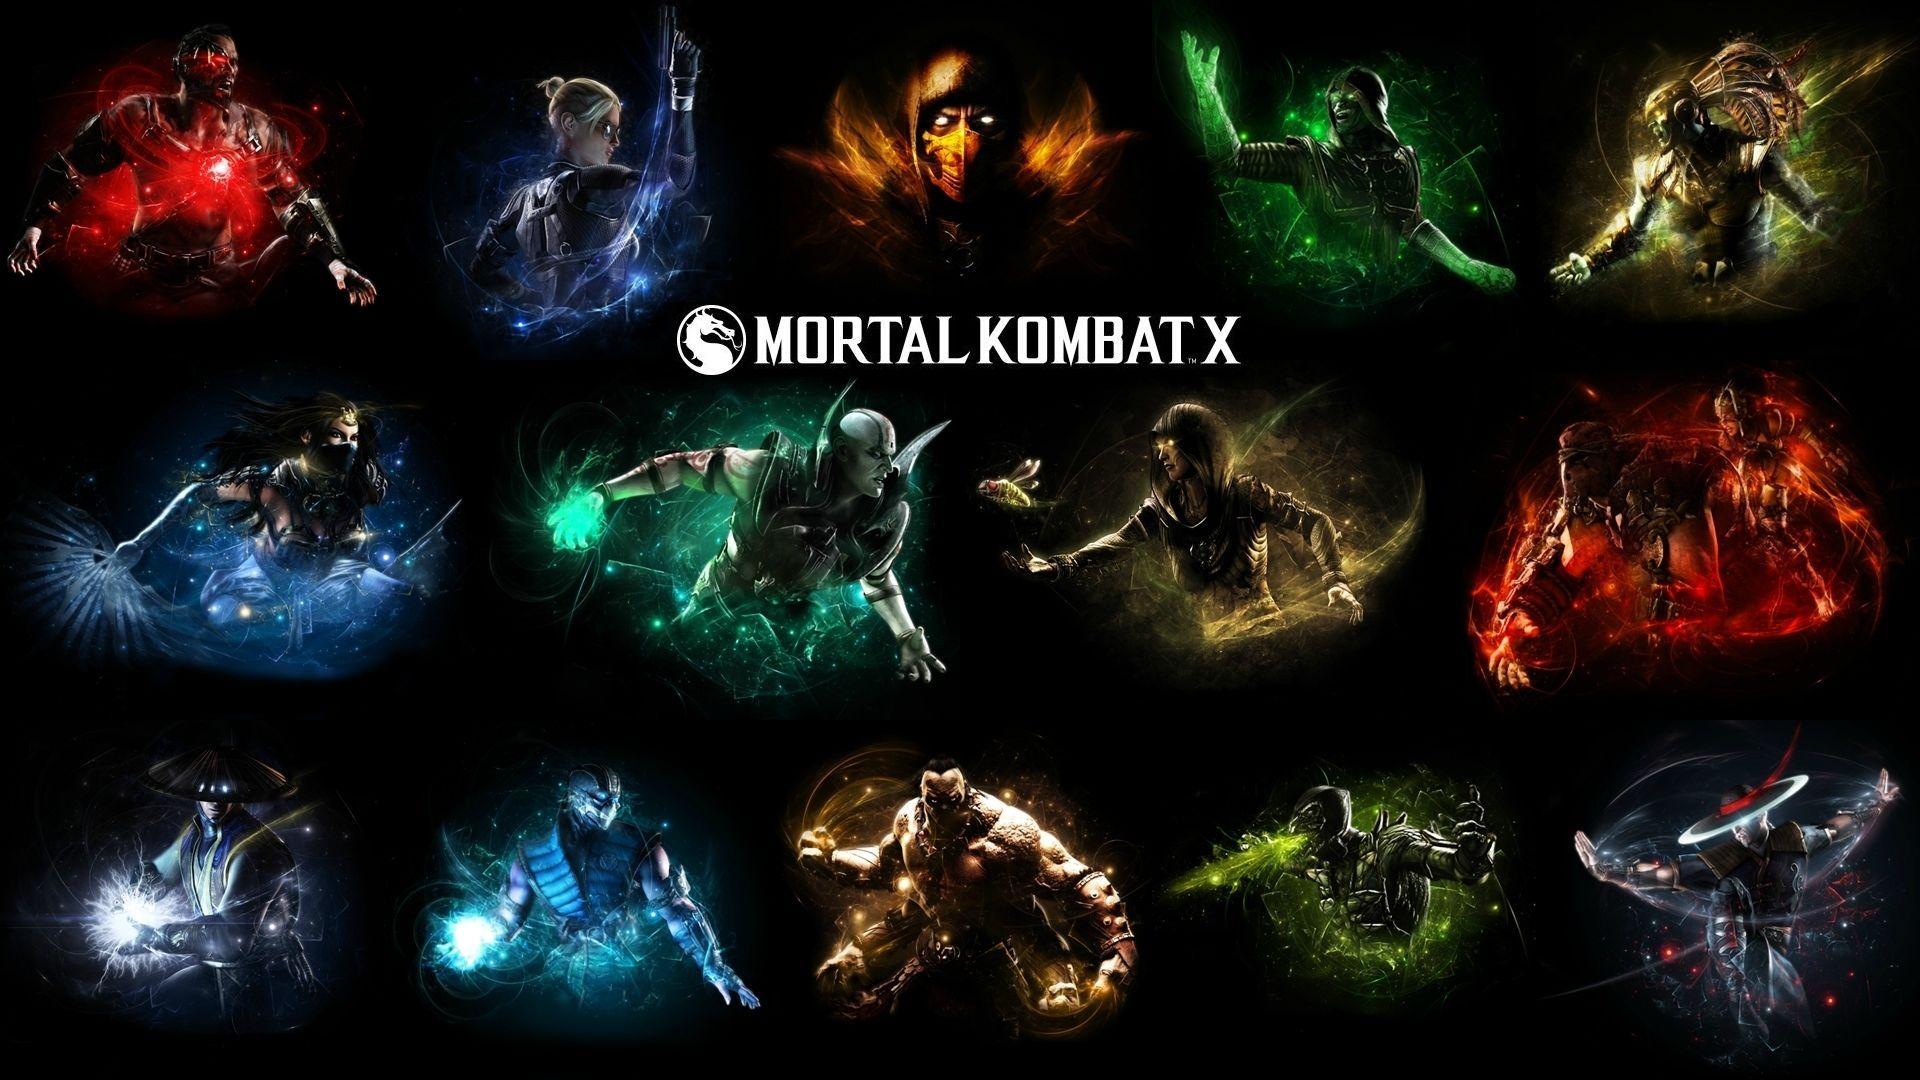 Triborg Mortal Kombat Games Fan Site Wallpaper Wpt8009546